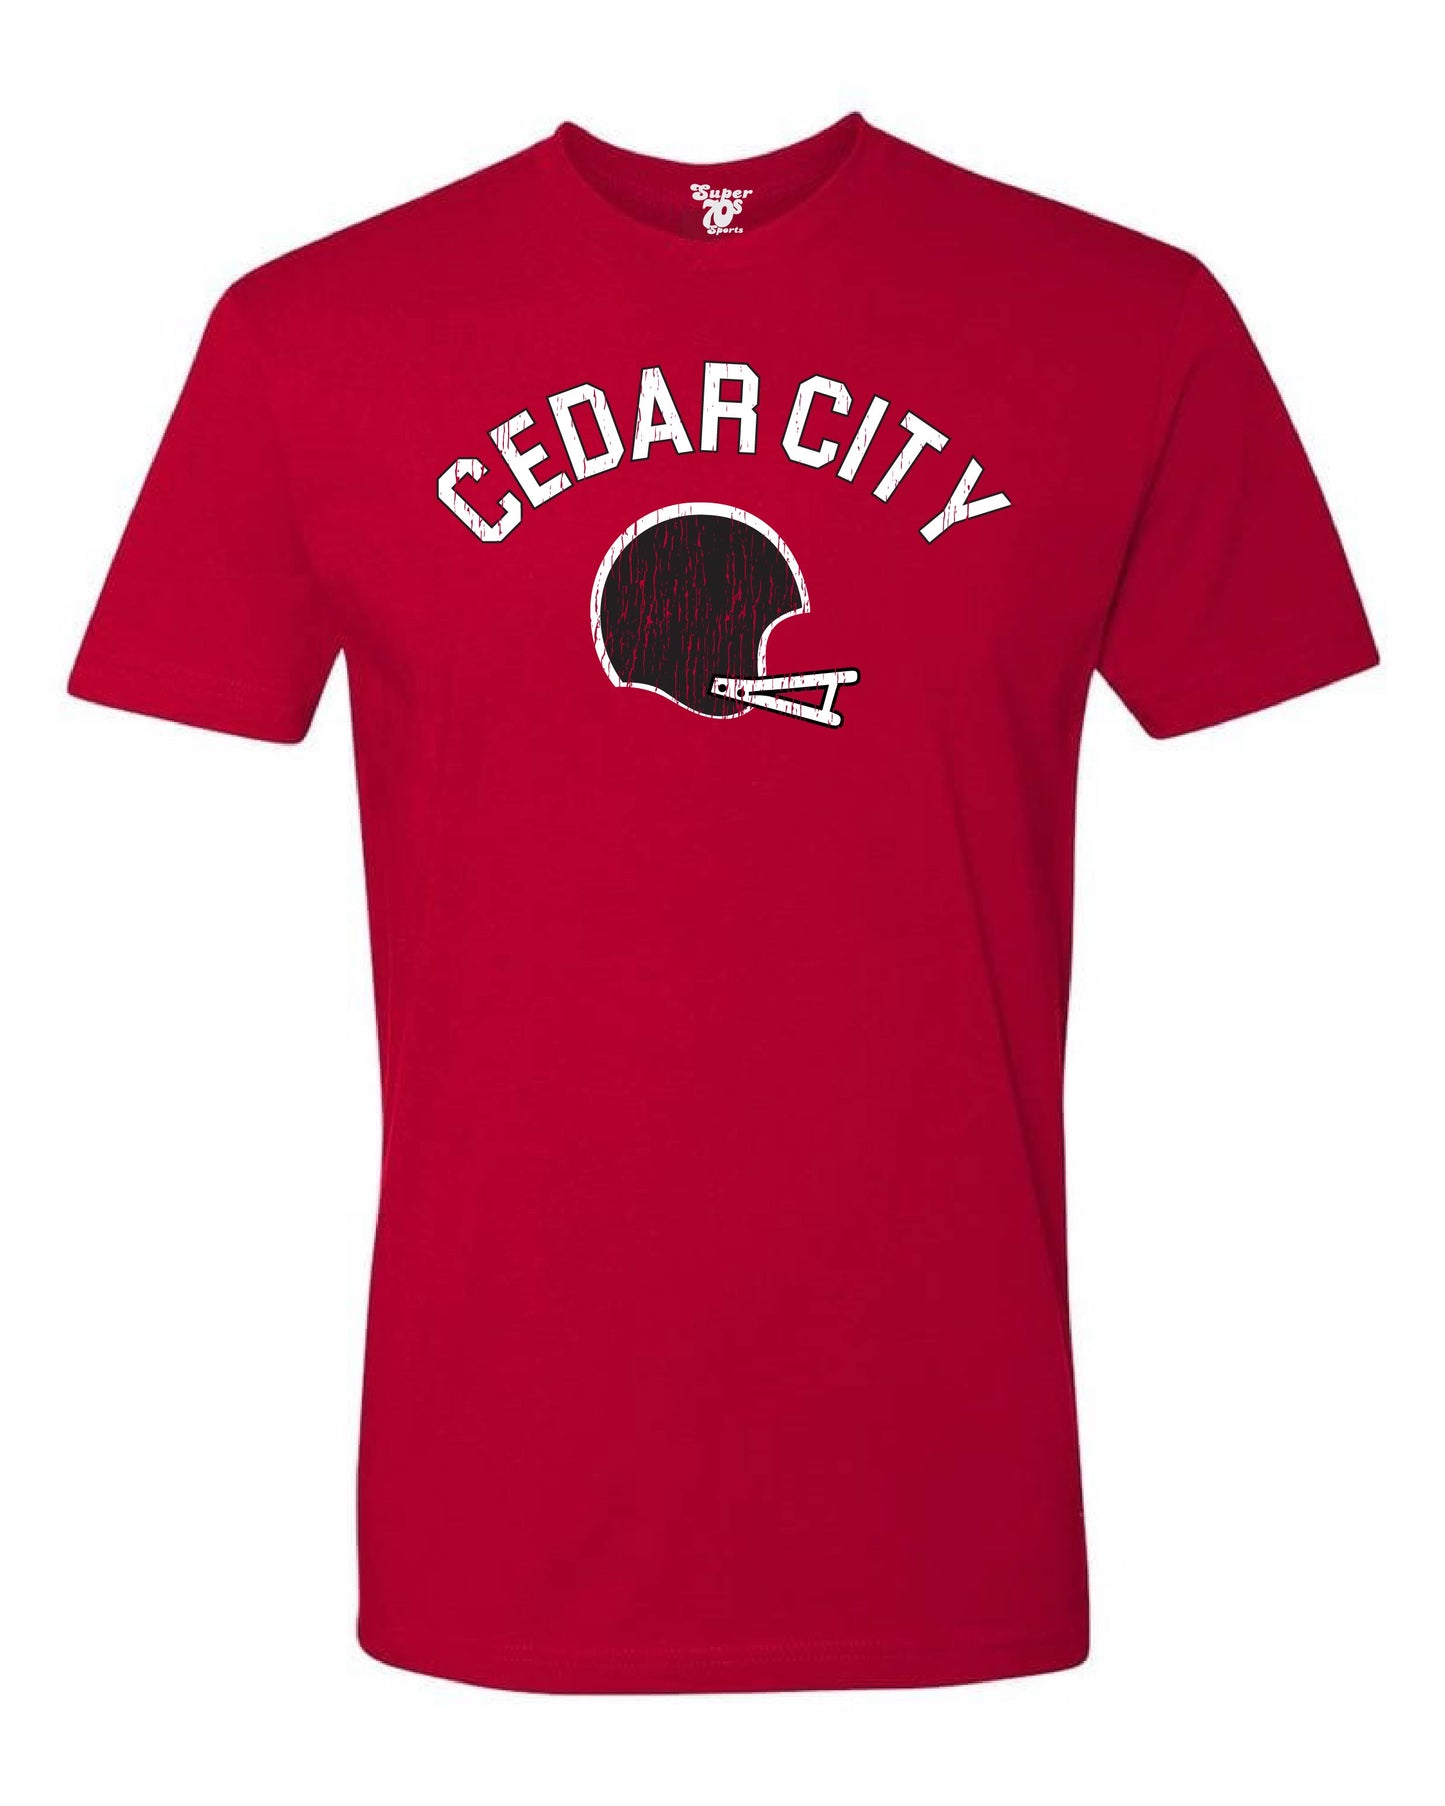 Cedar City Football Tee